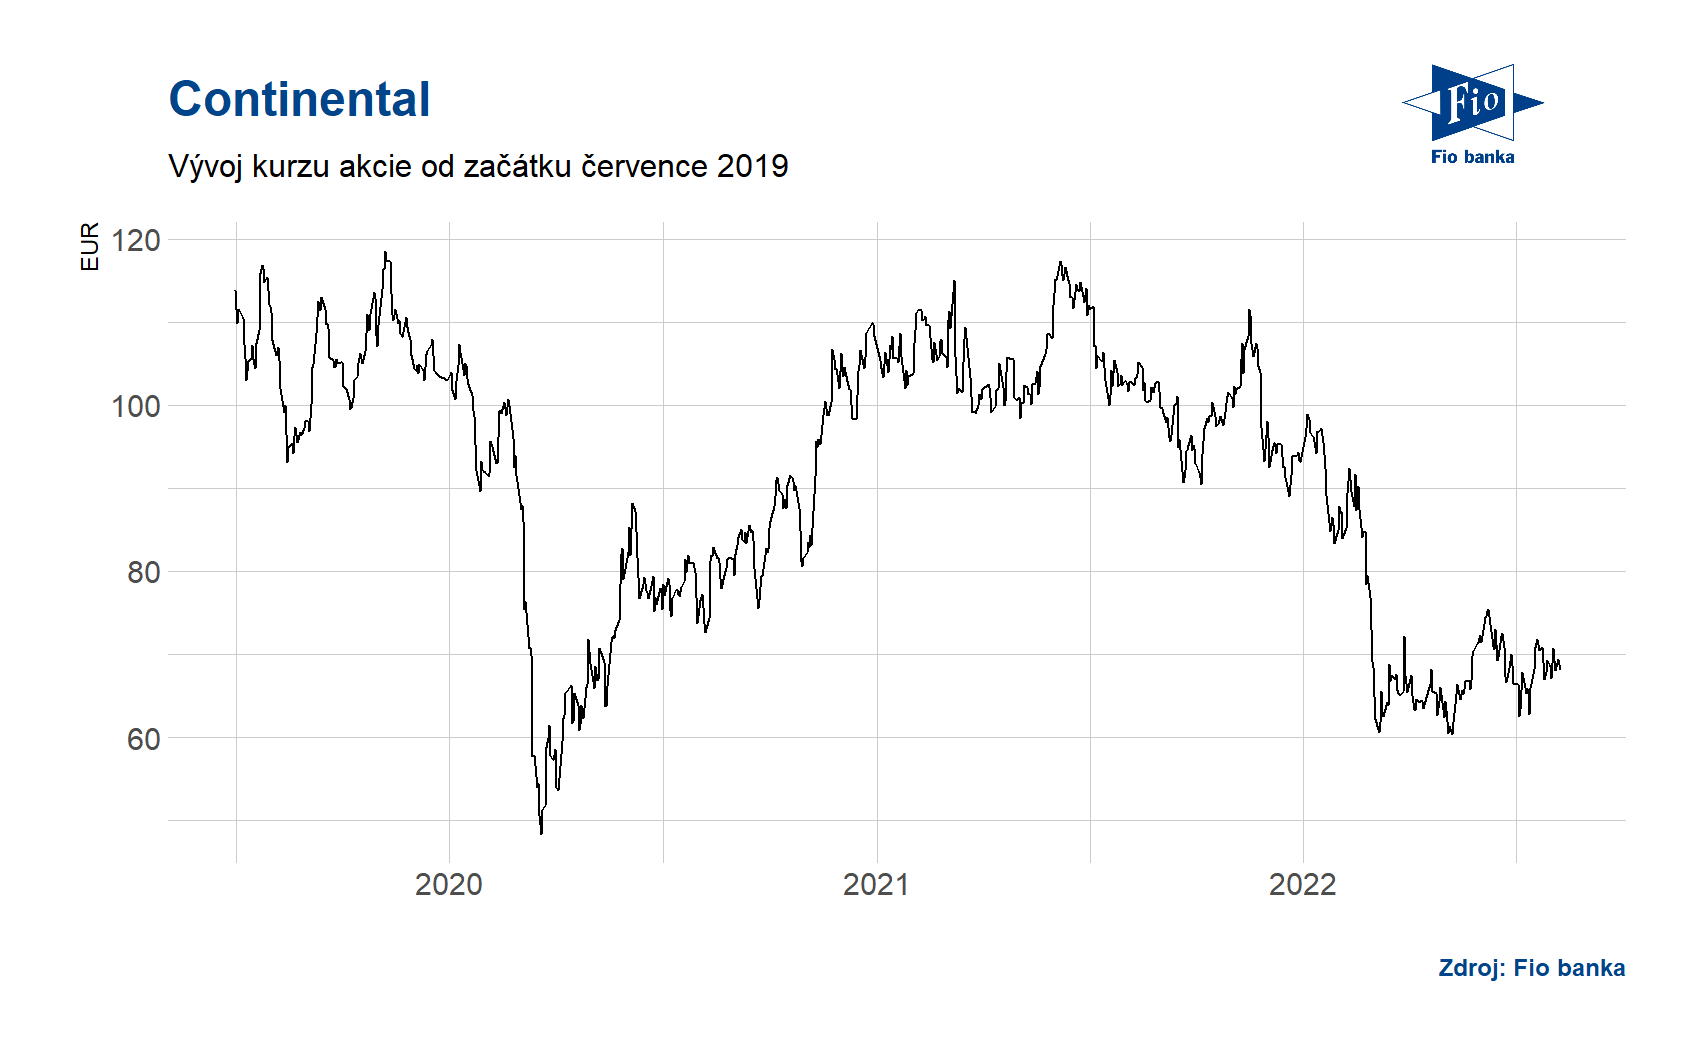 Vývoj ceny akcie Continental. Zdroj: Bloomberg